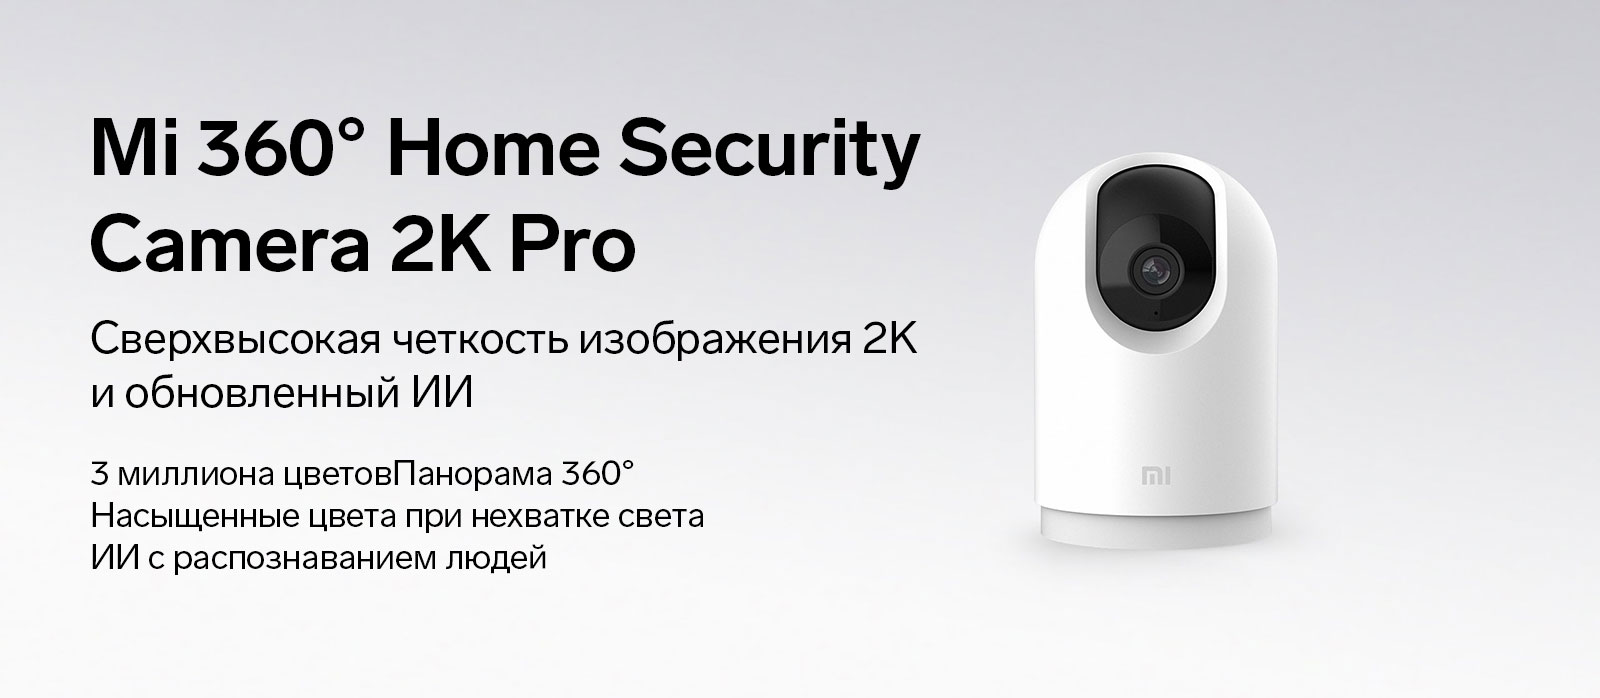 Mi 360 HS Camera 2K Pro